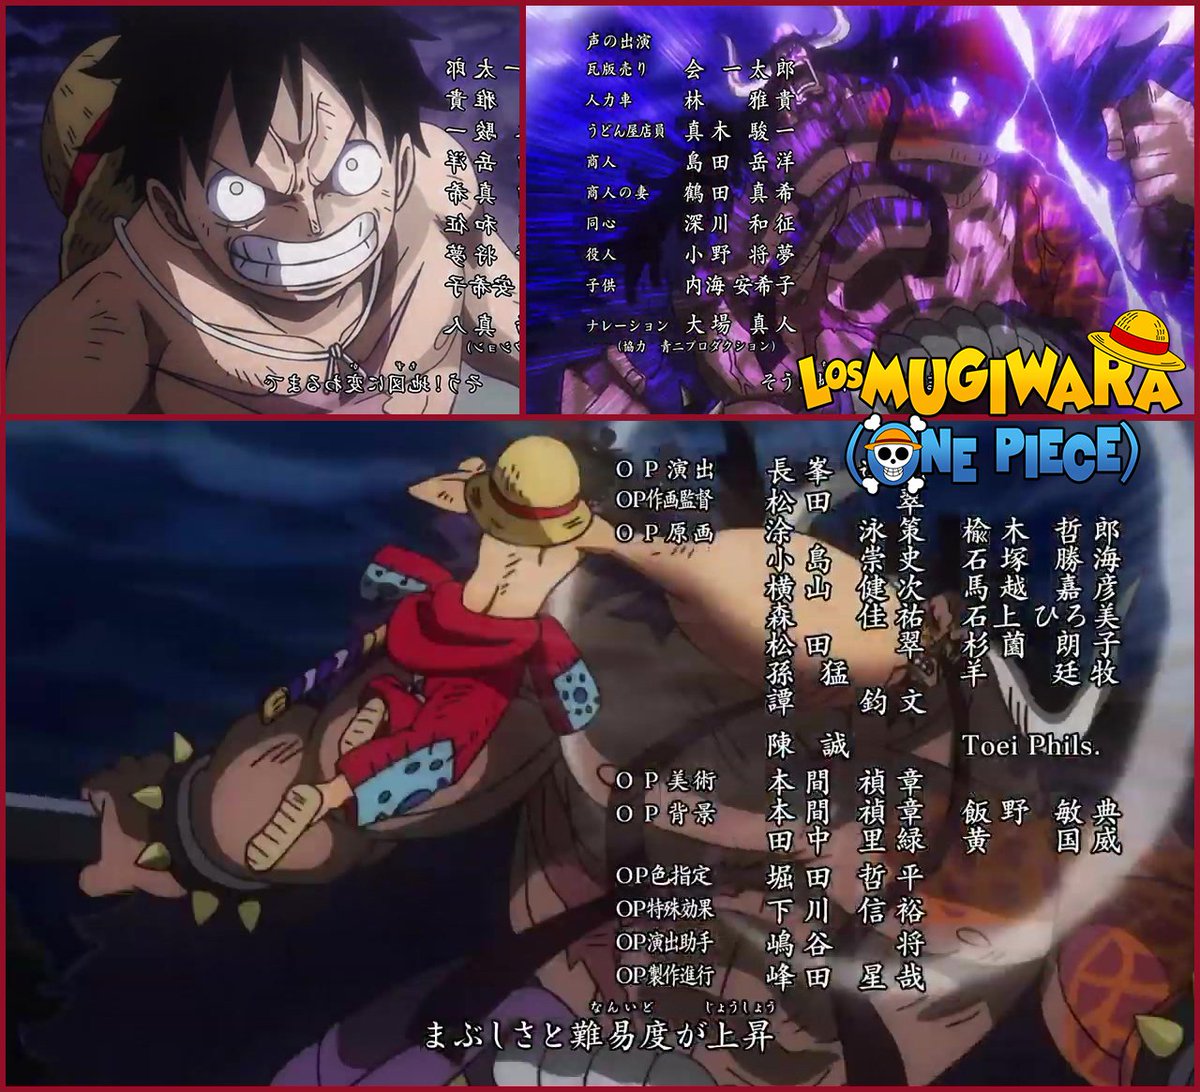 Los Mugiwara One Piece Luffy Vs Kaido En El Nuevo Opening Onepiece Onepieceopening22